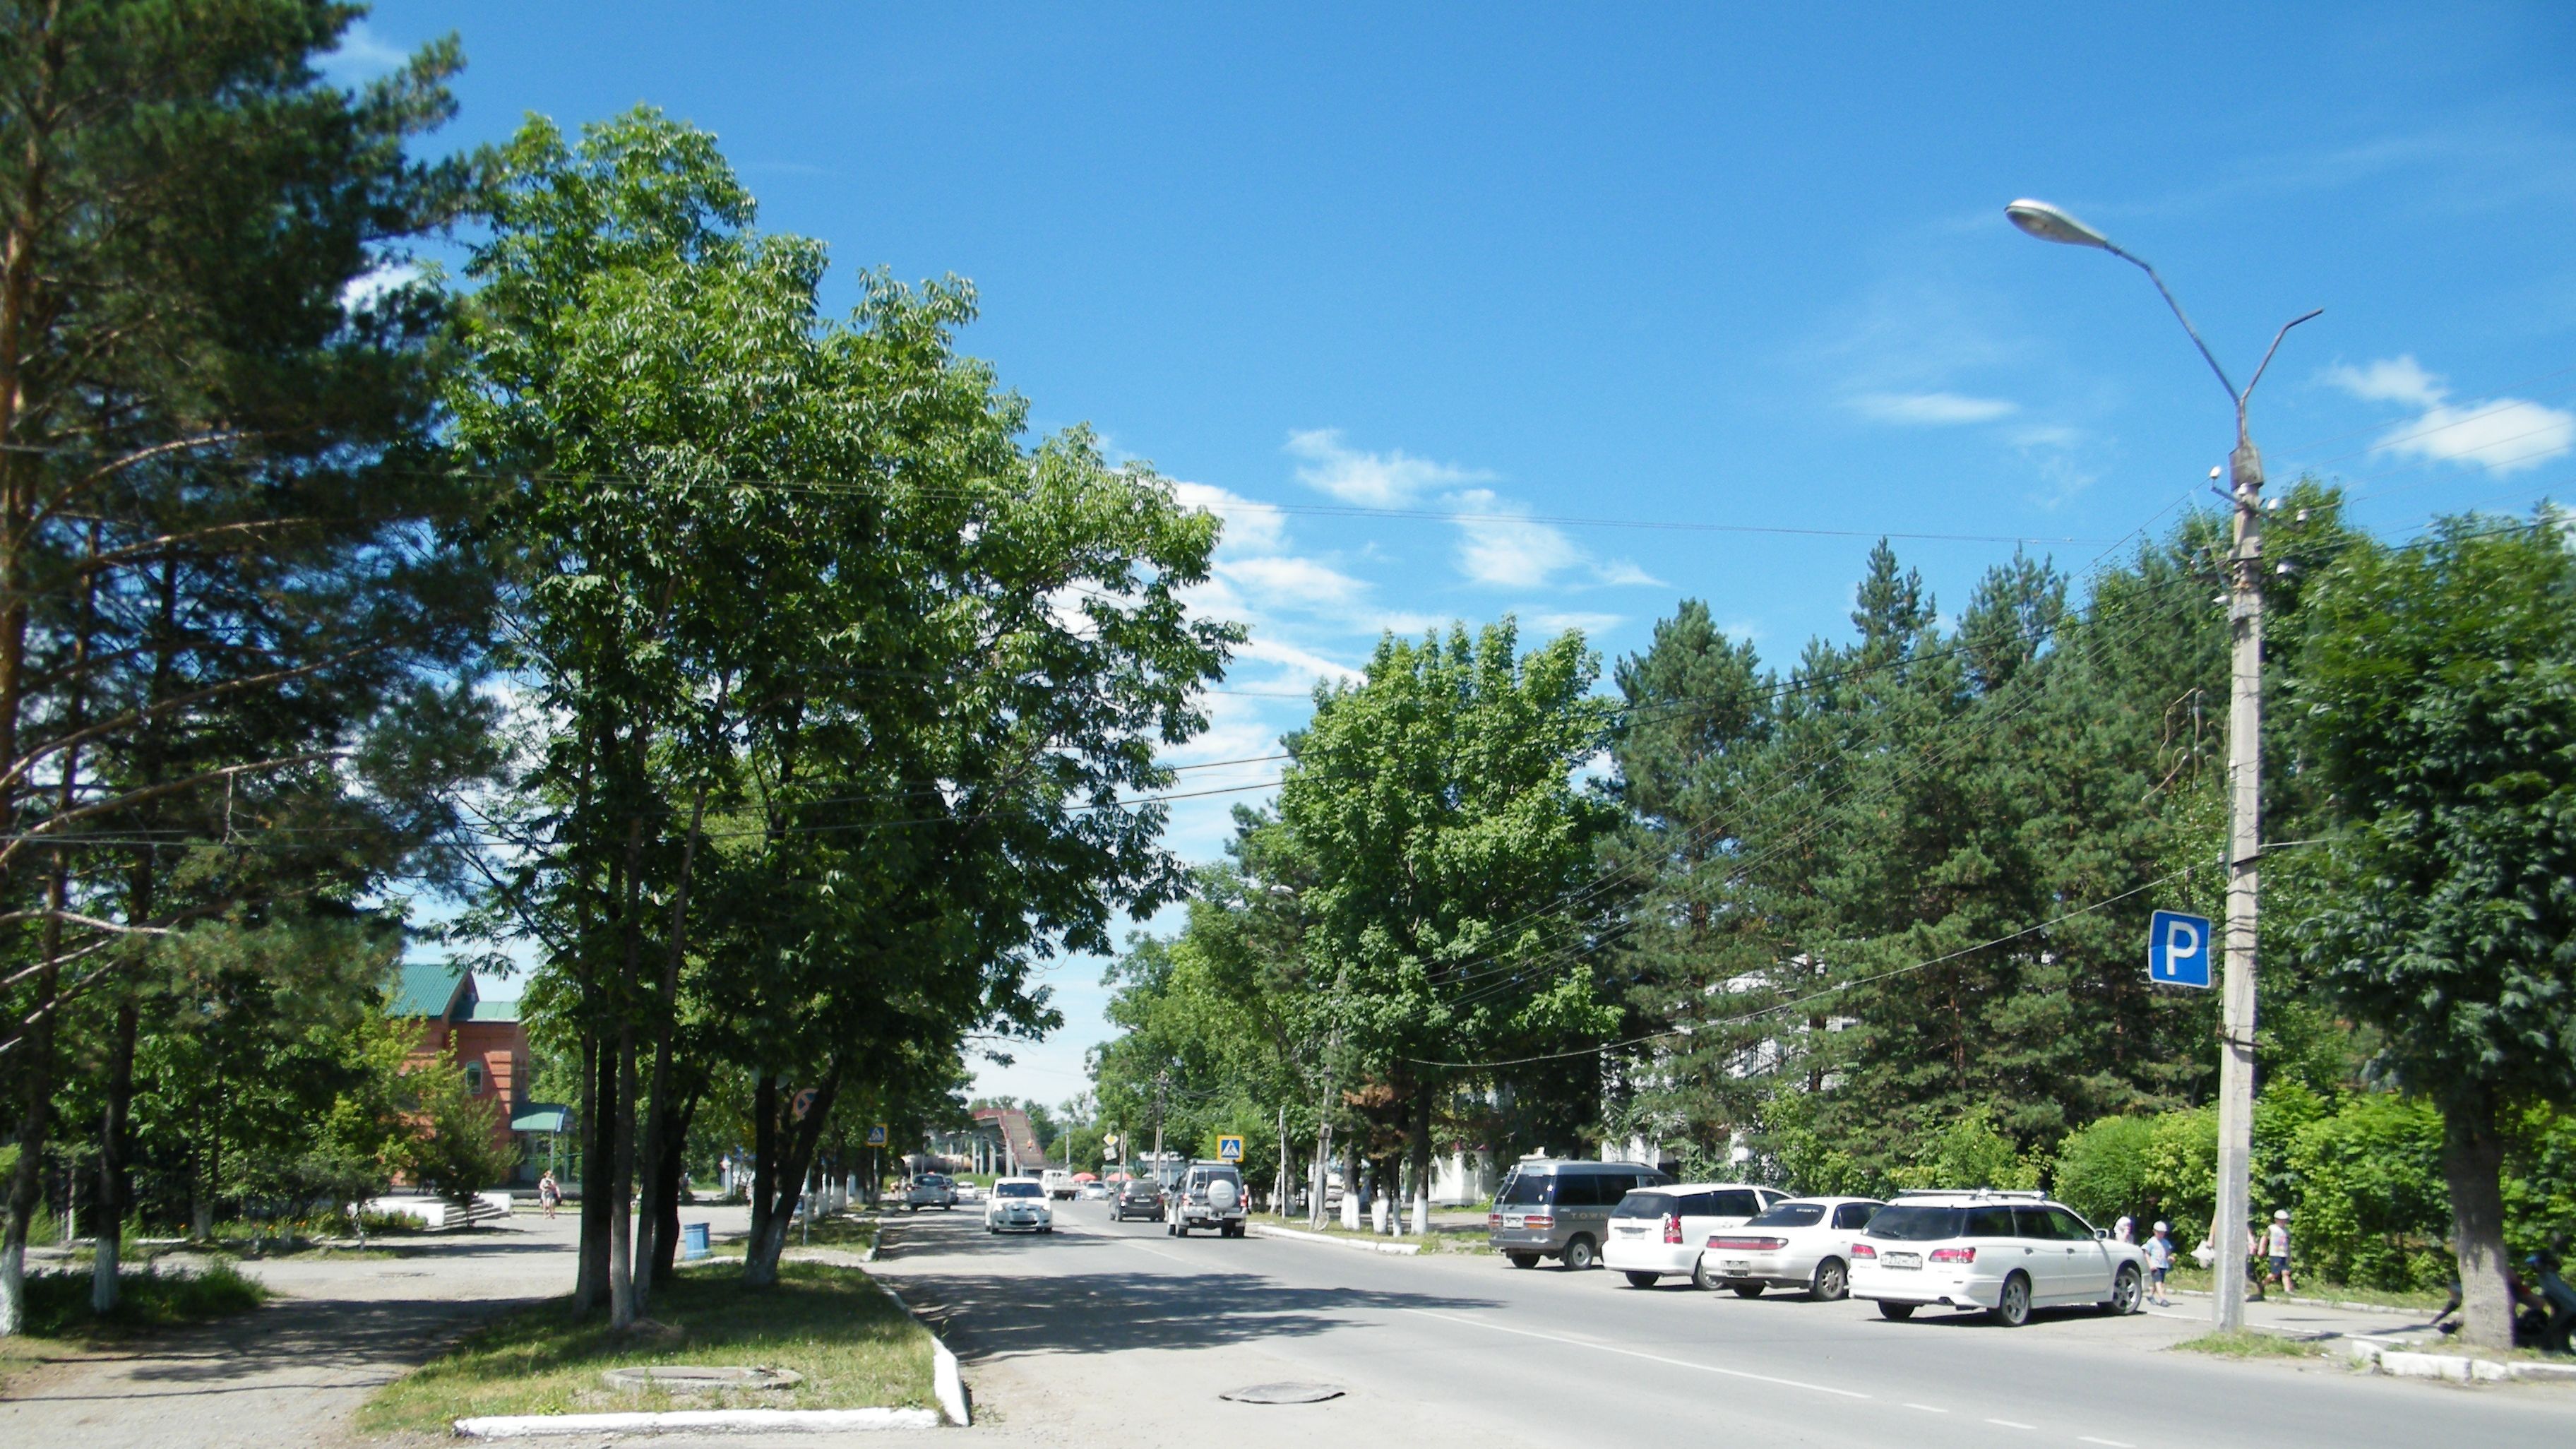 Улицы вяземского района